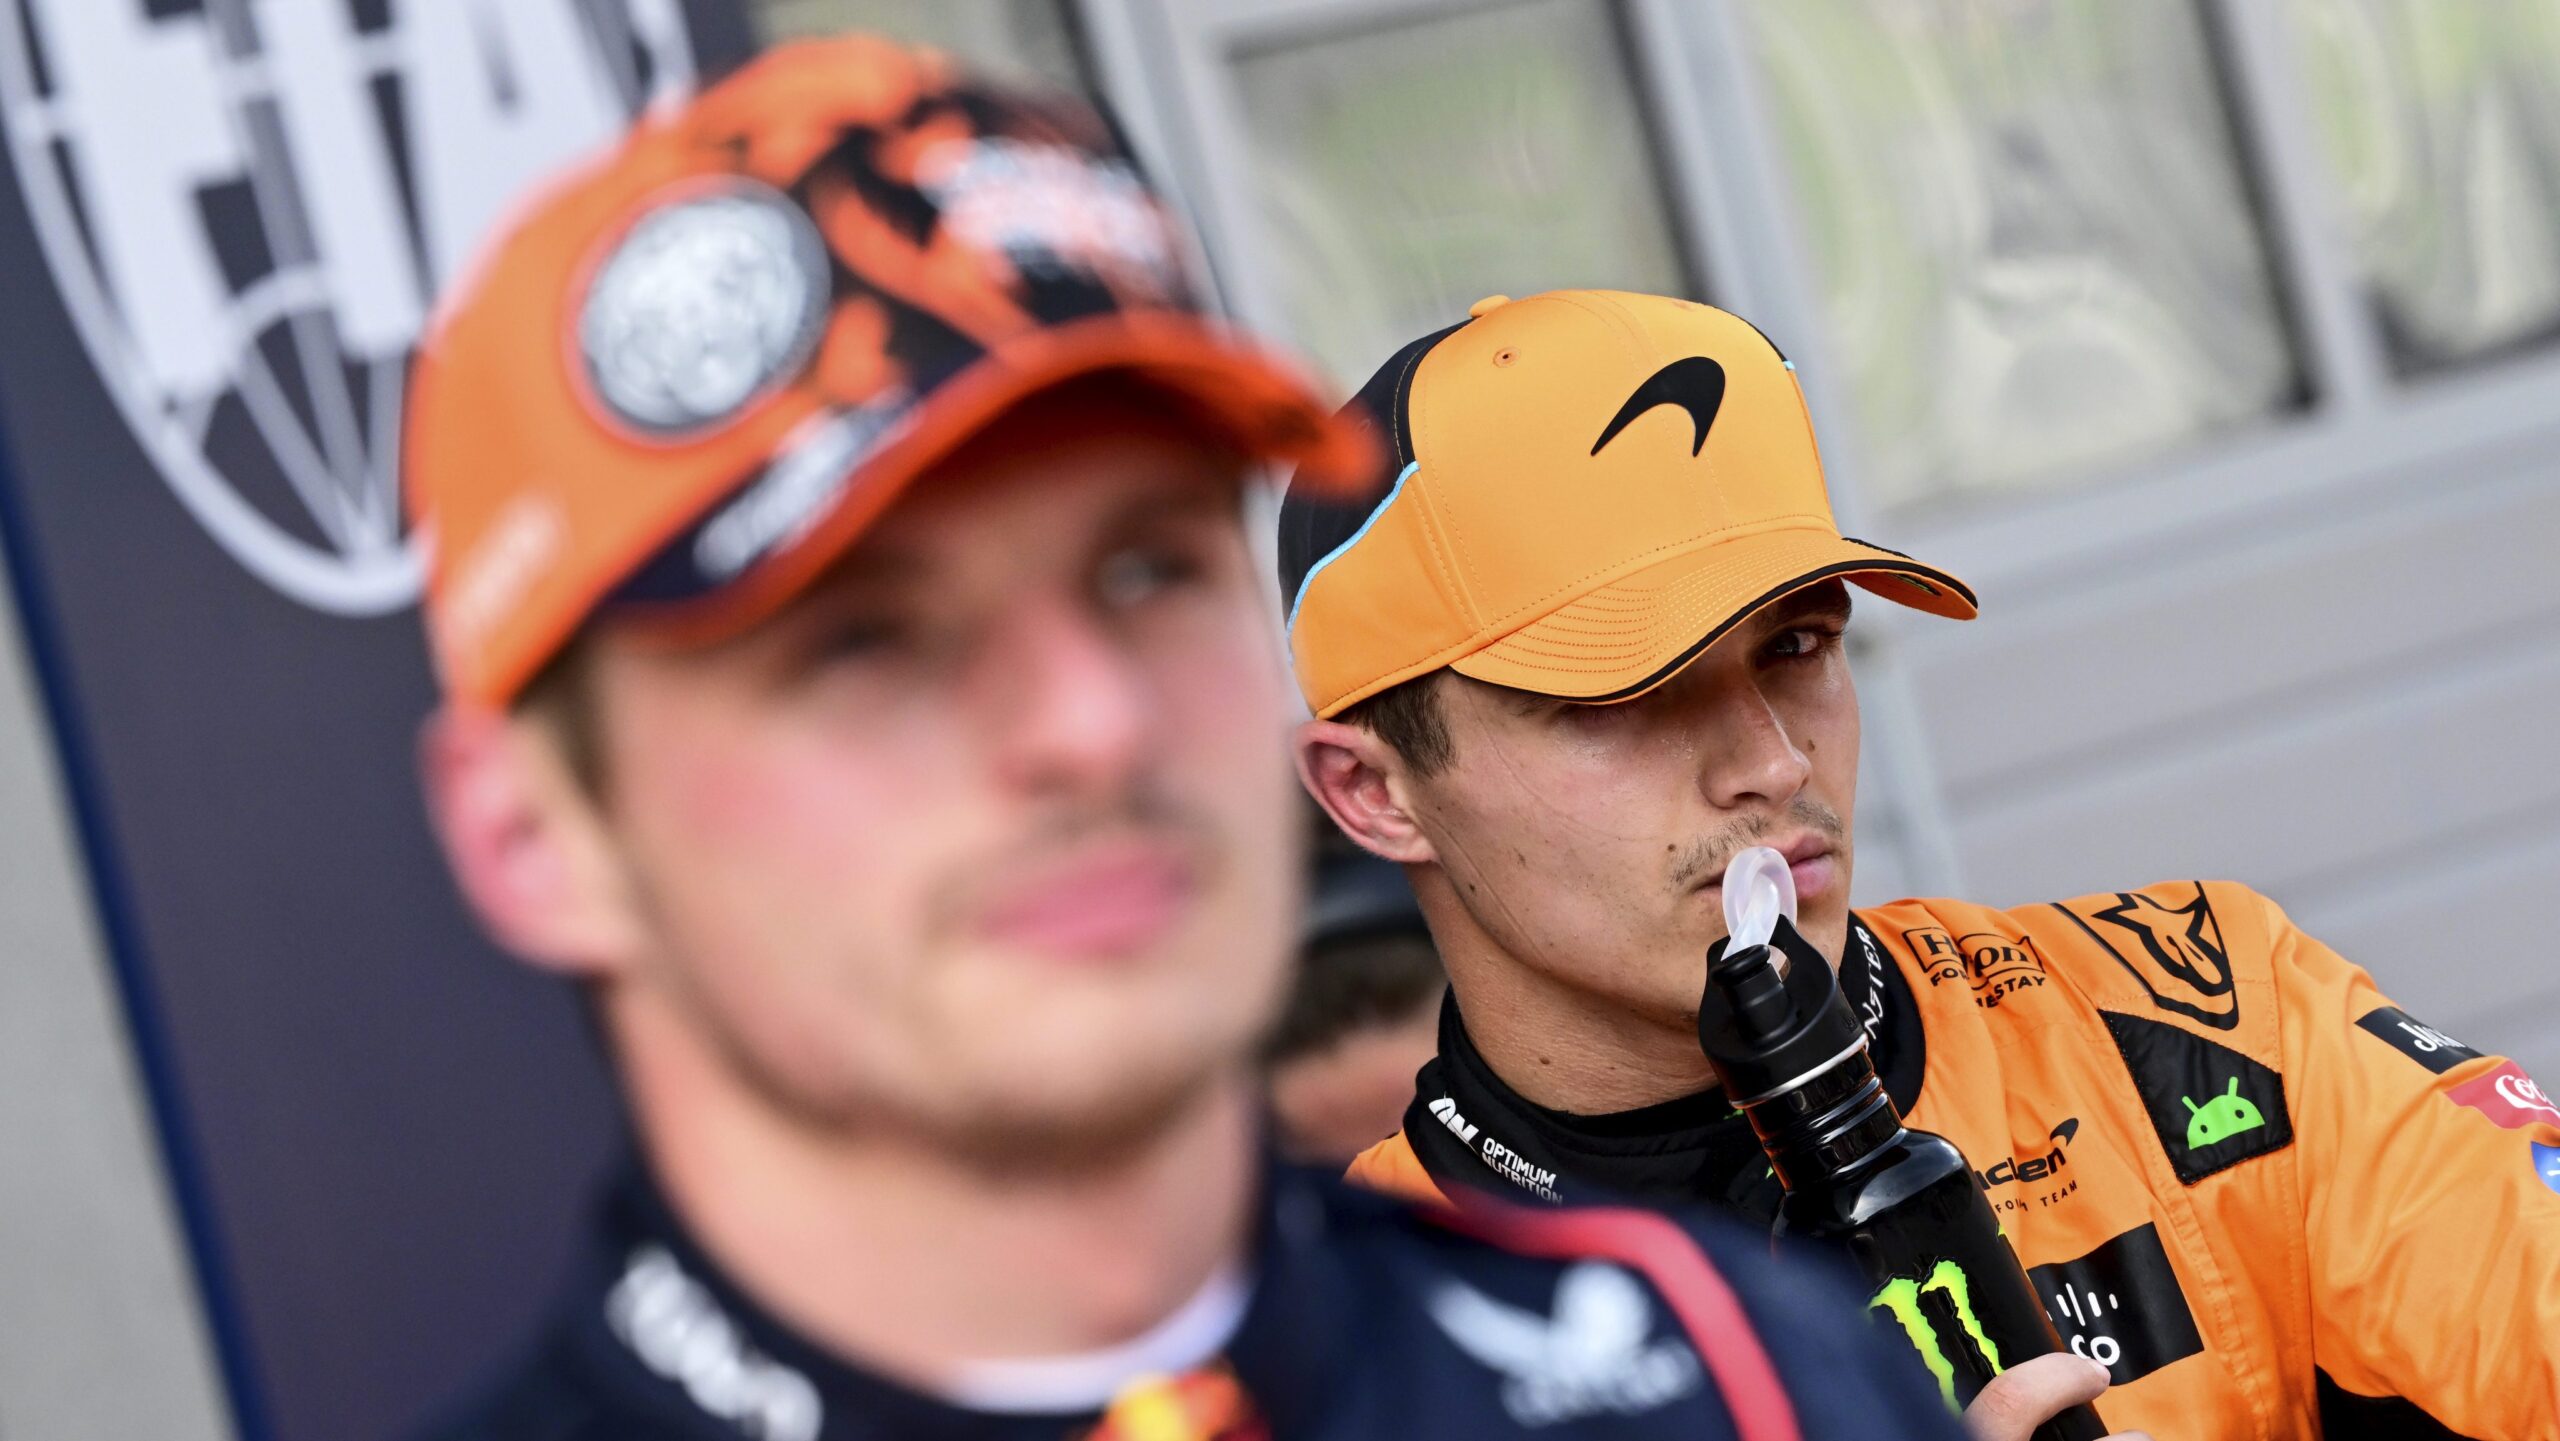 Choque entre Verstappen y Norris ayuda George Russell a llevarse el GP de Austria en la Fórmula 1 – El Diario NY